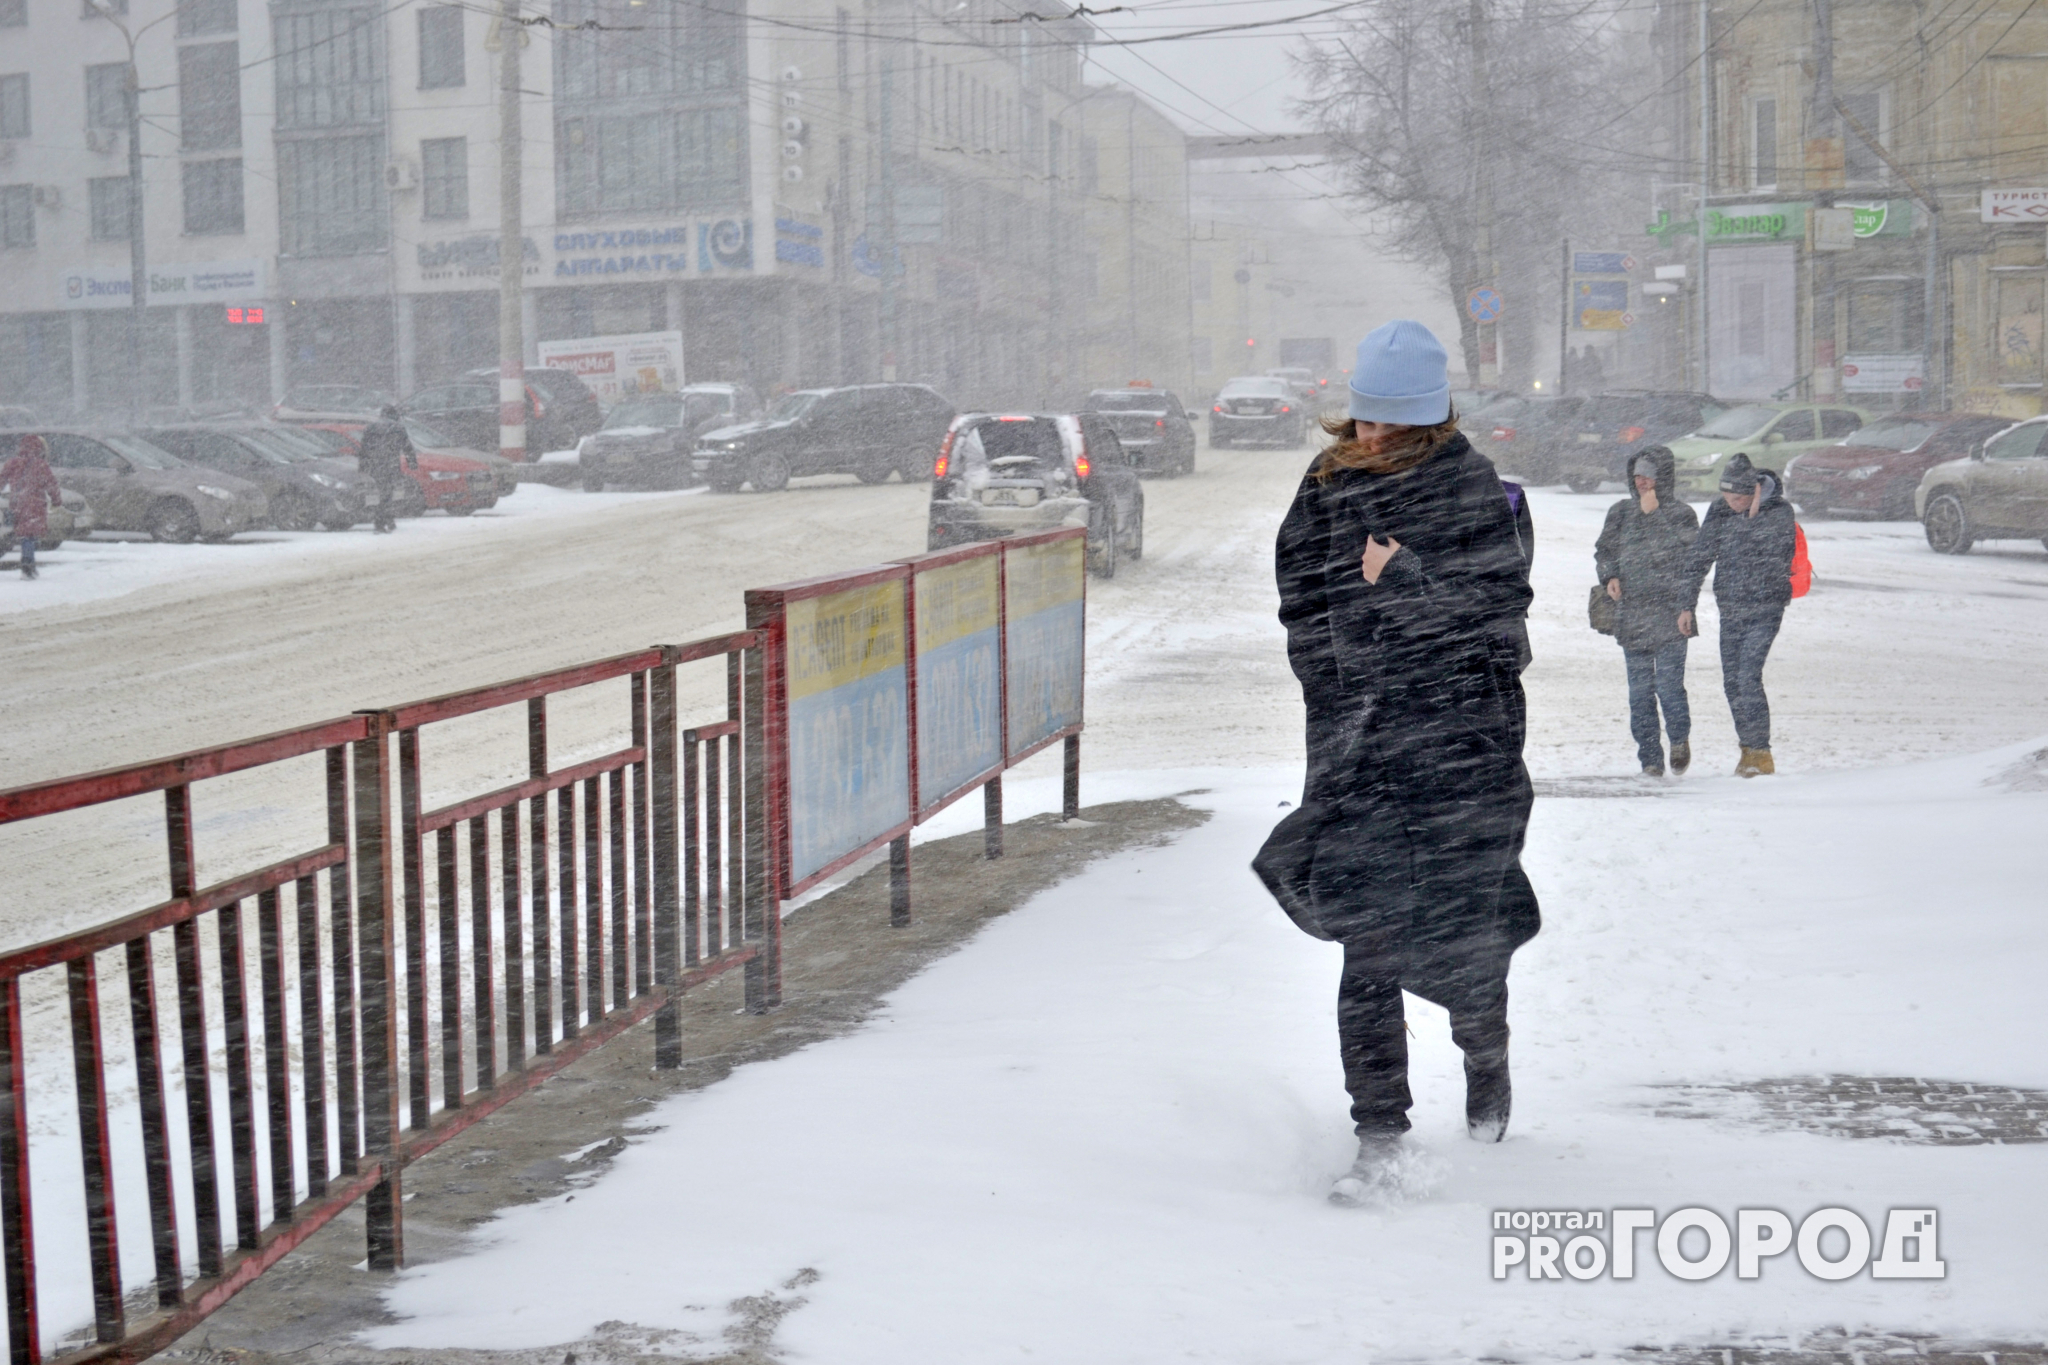 Прогноз погоды: в Нижний Новгород идет настоящая зима